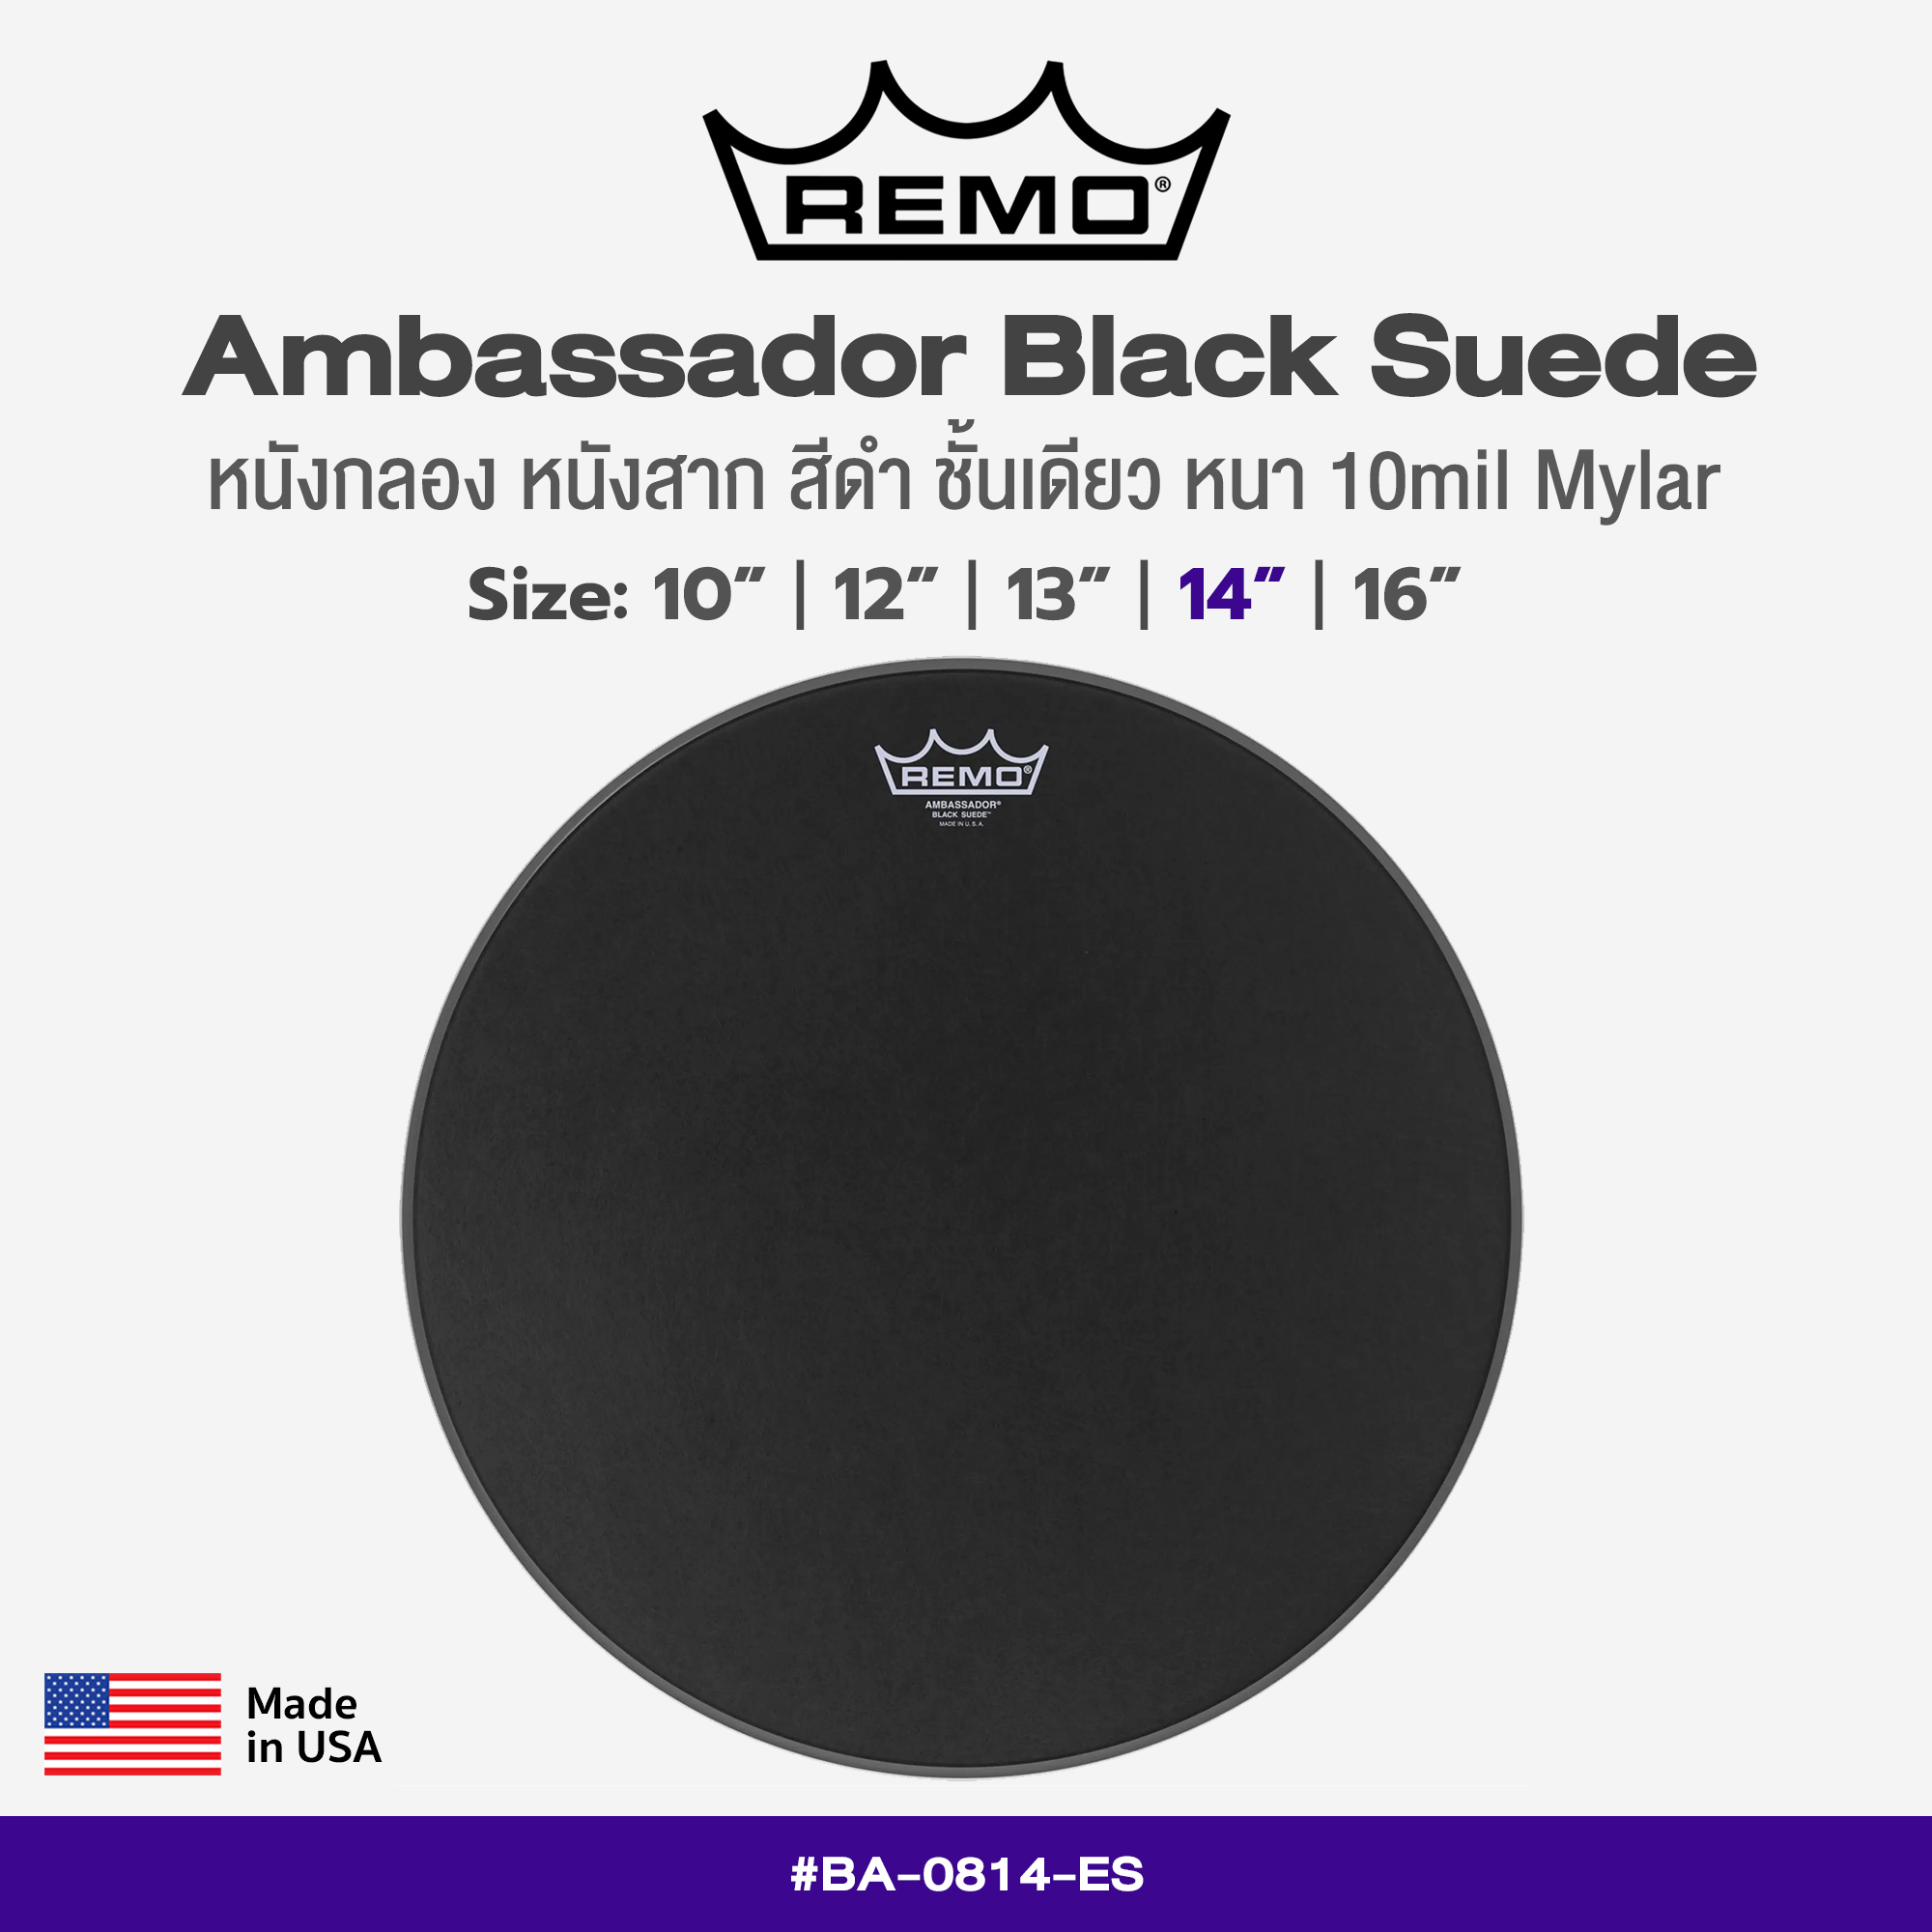 Remo Black Suede Ambassador